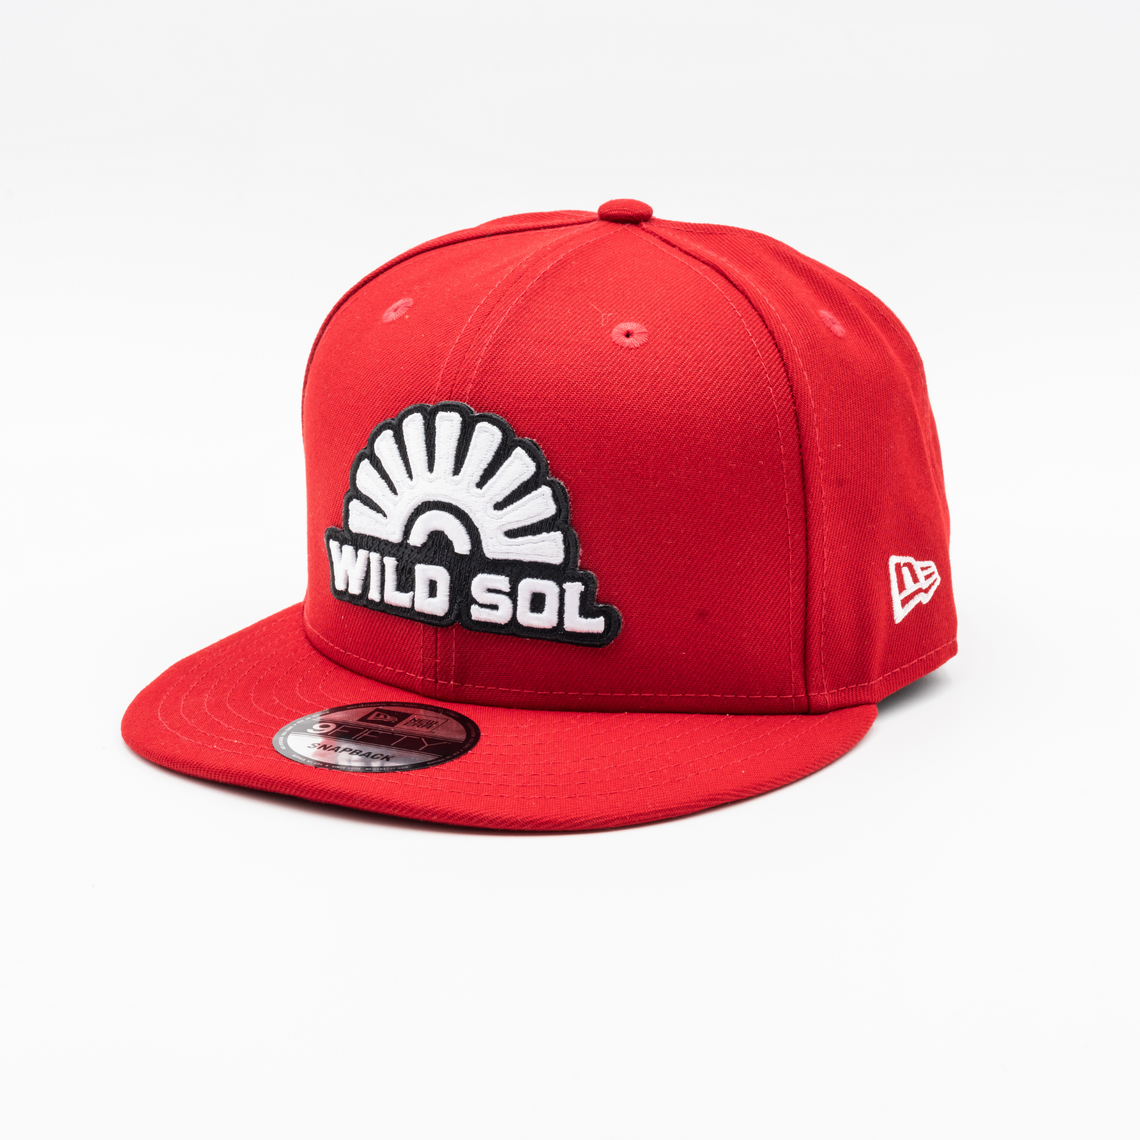 Wild Sol Red New Era Hat